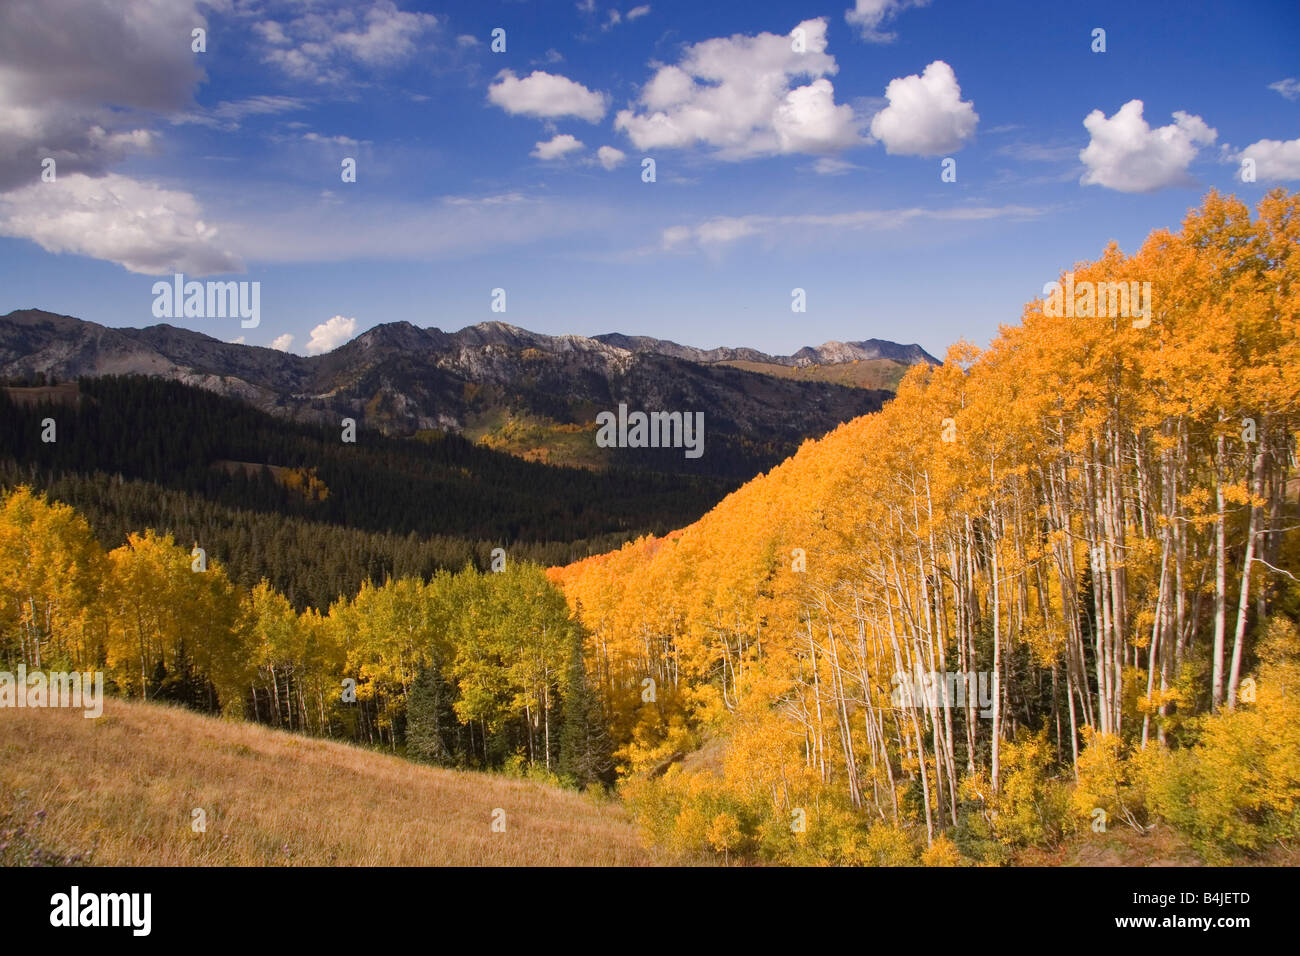 I colori autunnali di Aspen alberi nelle montagne Wasatch vicino a Park City nello Utah Stati Uniti d'America Foto Stock